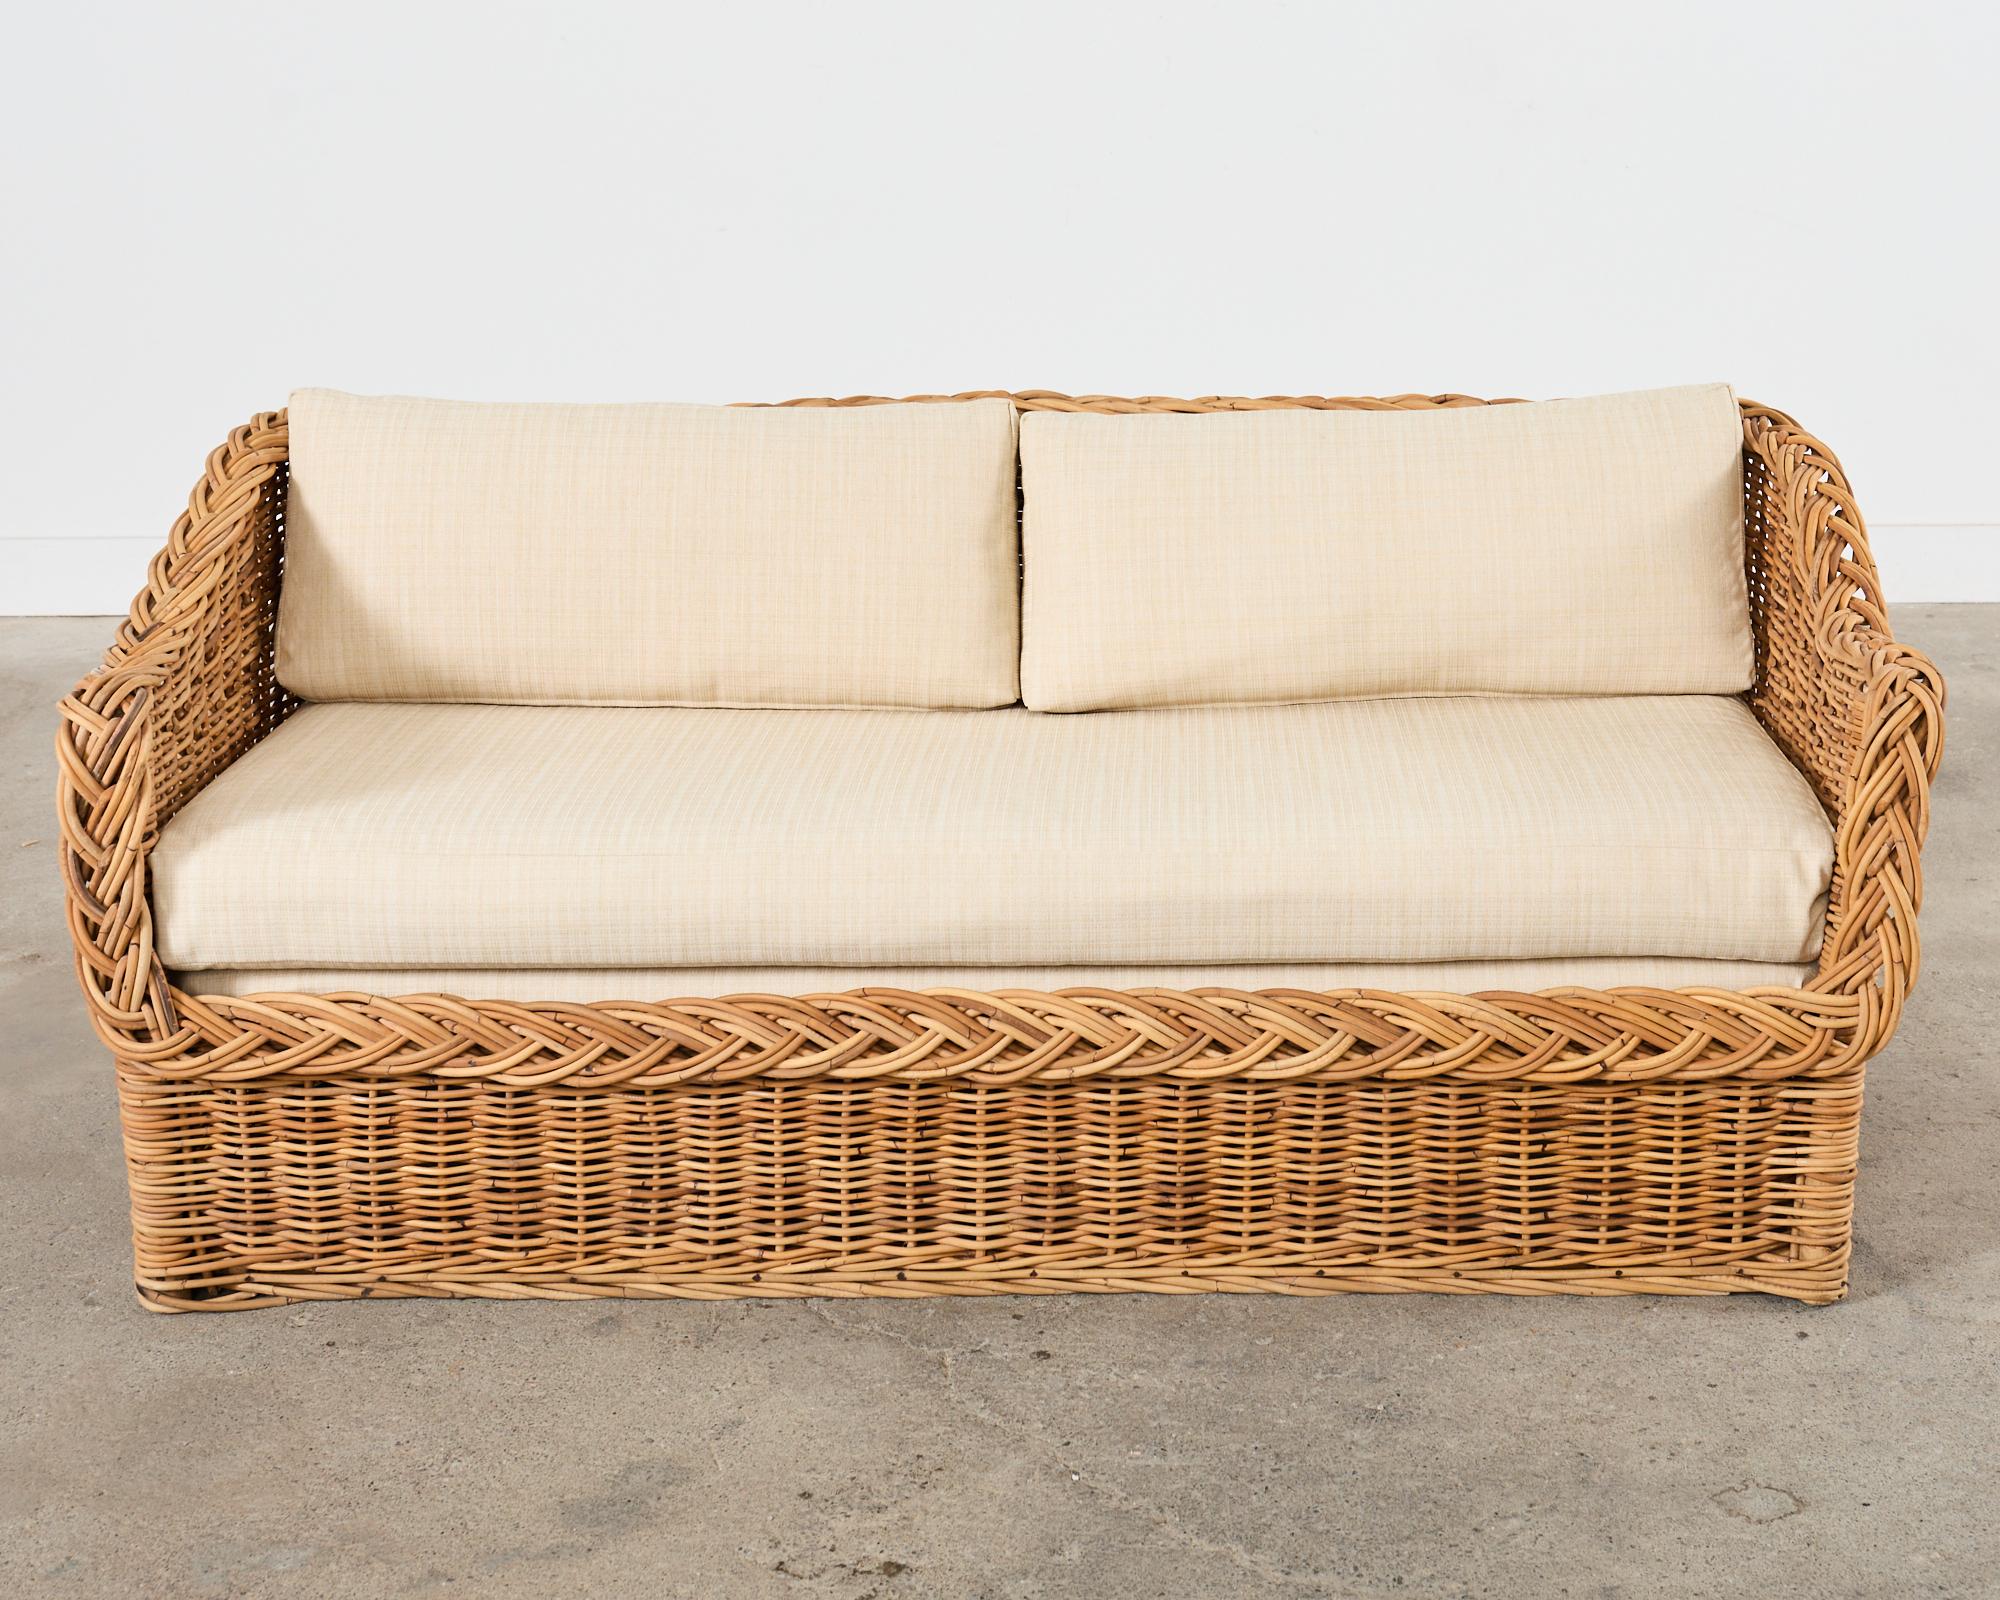 Italian Michael Taylor Style Wicker Rattan Sofa by Wicker Works For Sale